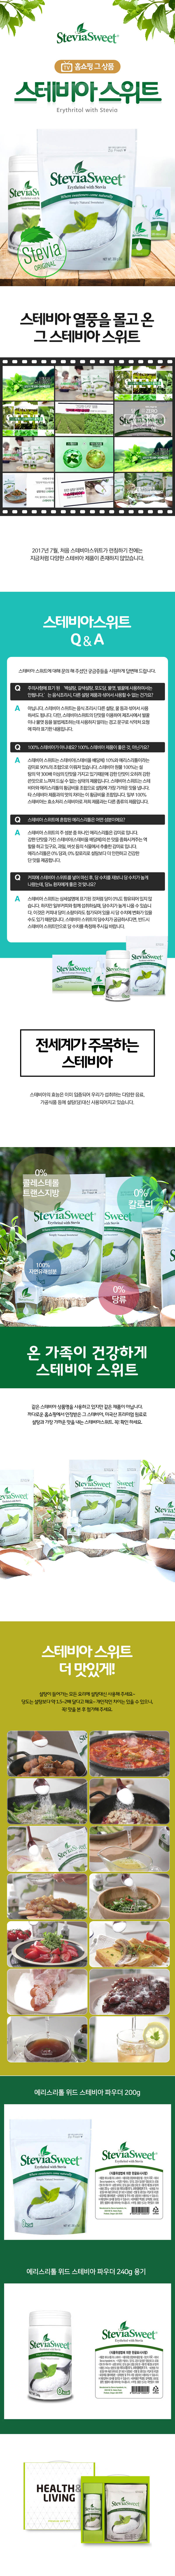 stevia02-d.jpg